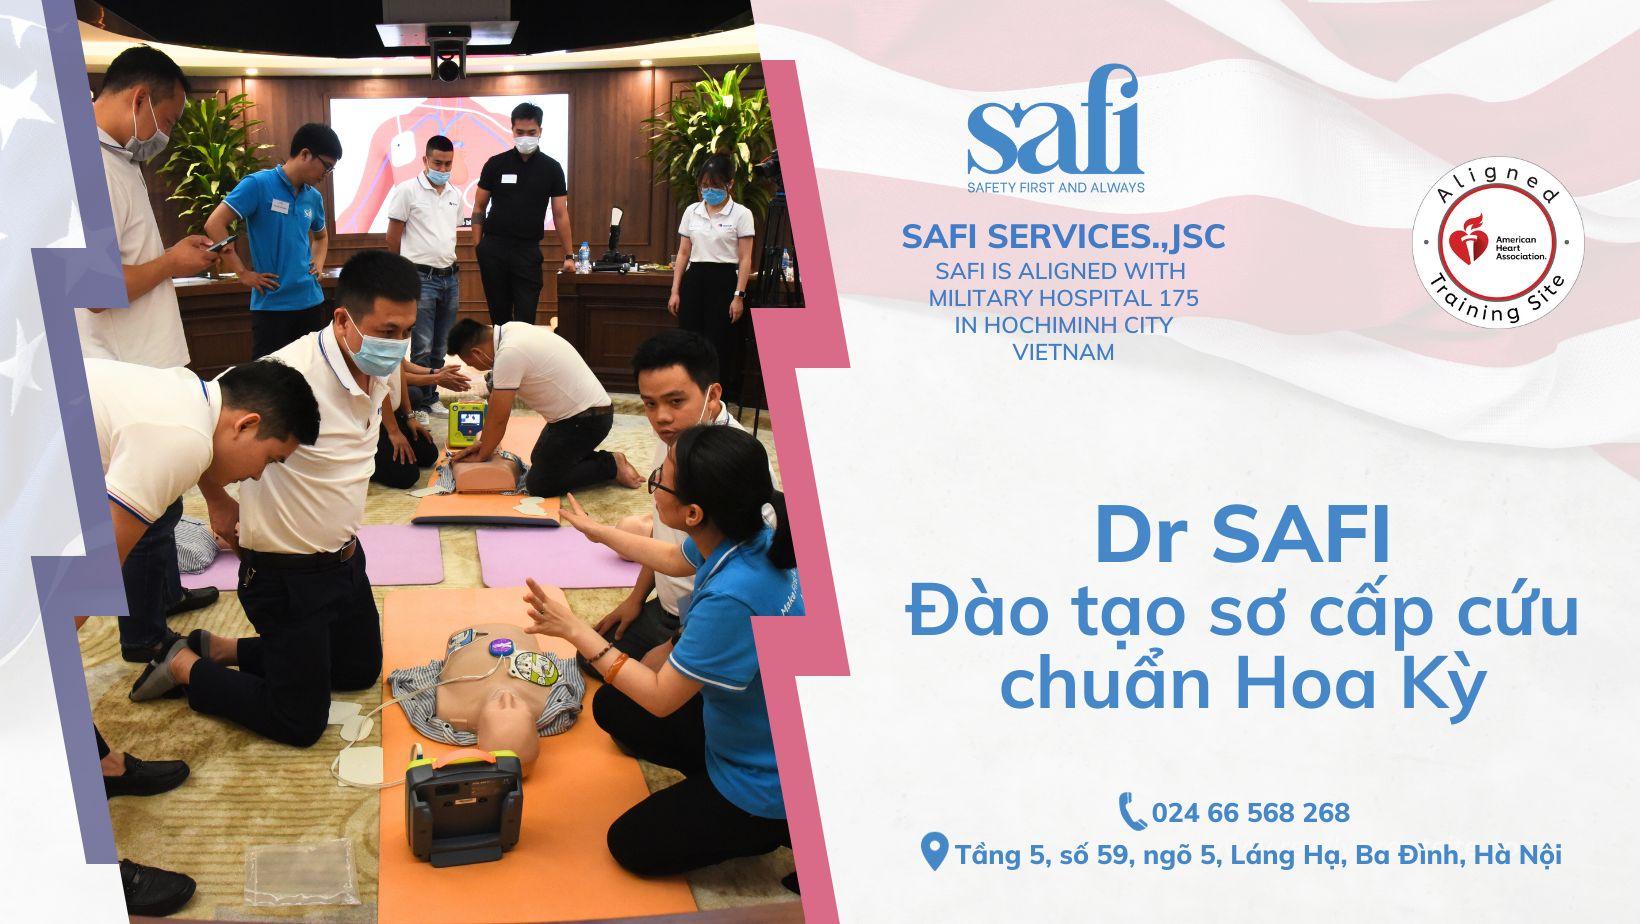 SAFI Services., JSC